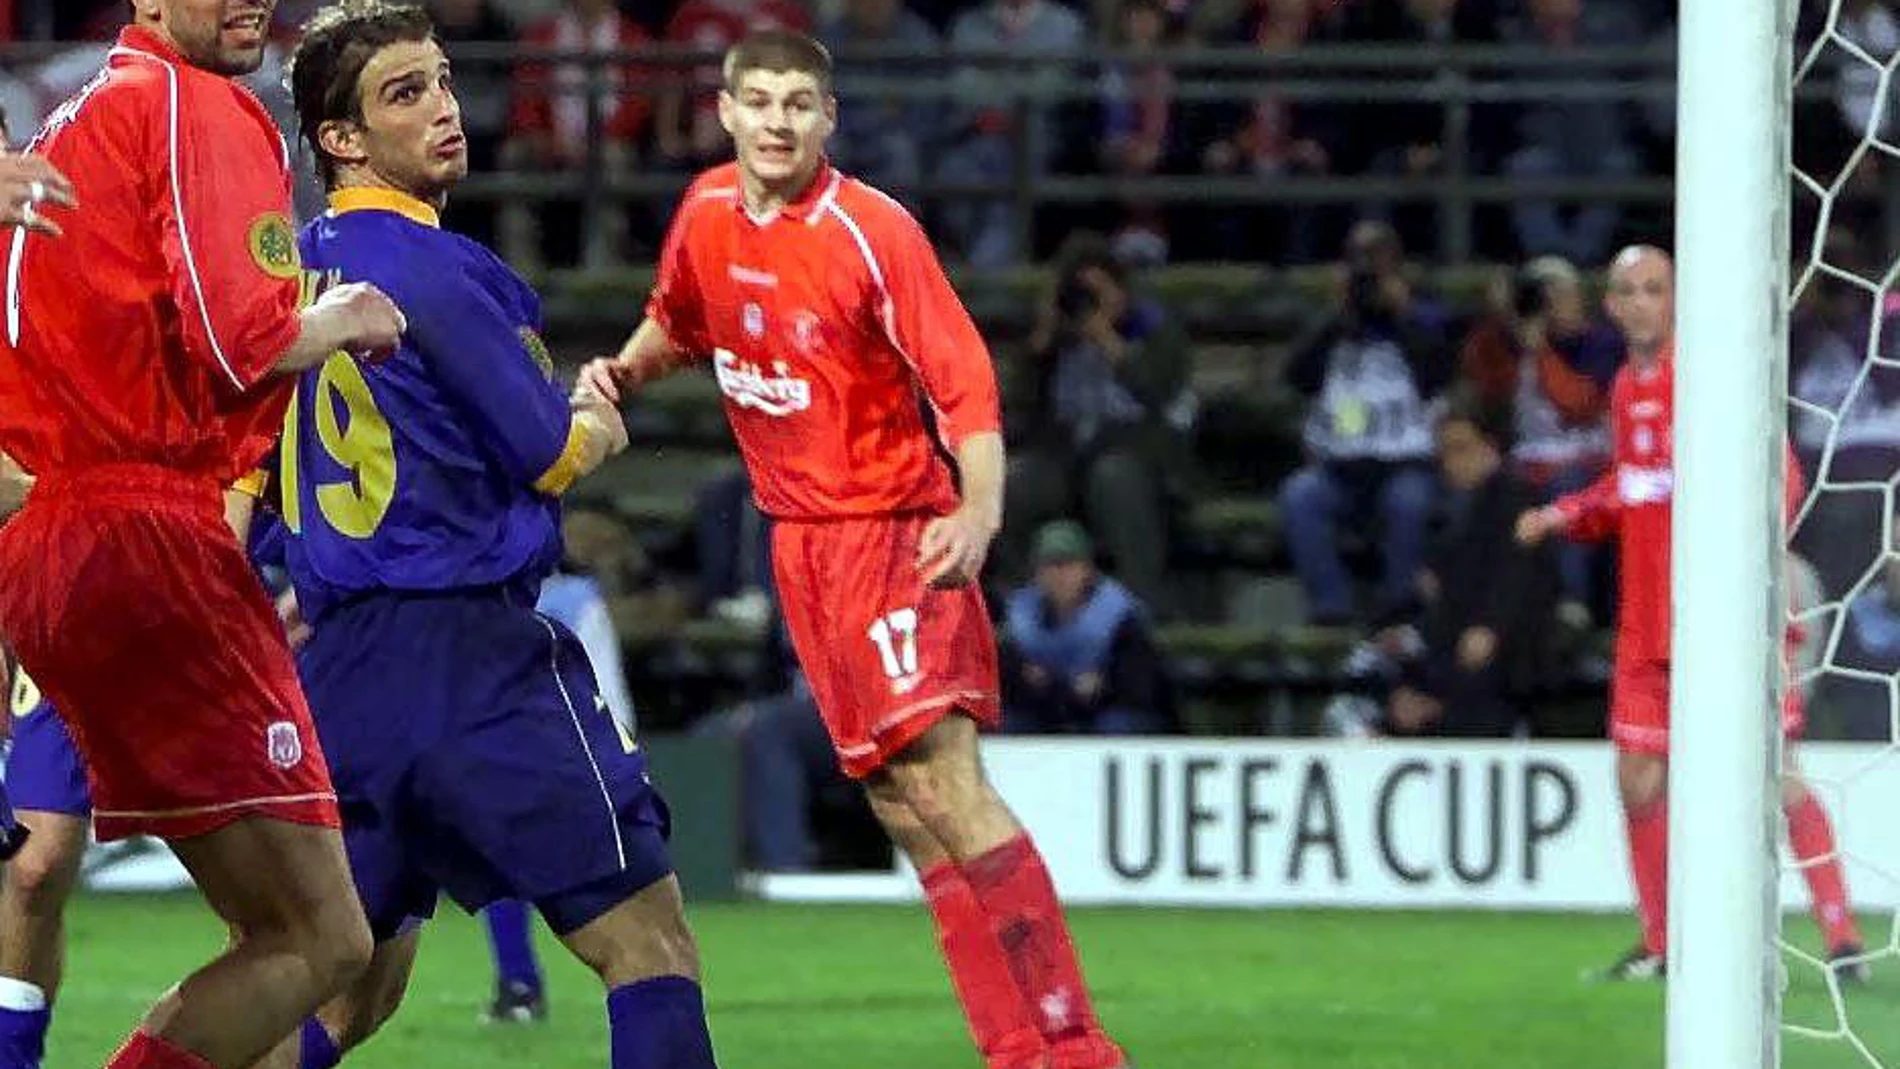 El gol en propia meta de Delfi Geli que sentenció la final de la Copa de la UEFA (5-4) entre el Liverpool y el Alavés en 2001